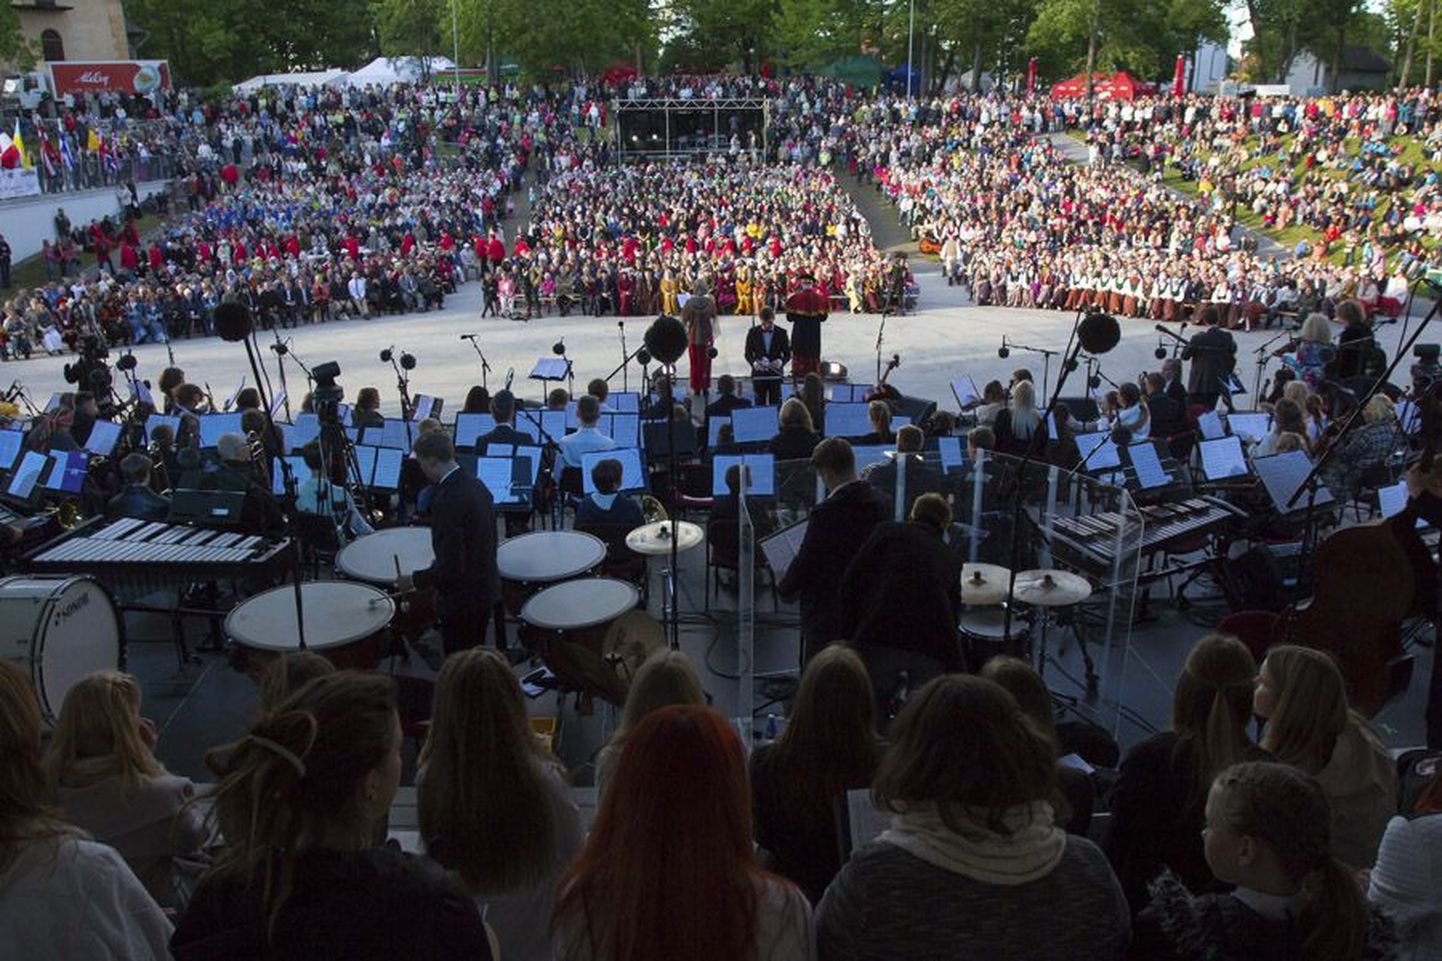 Kui hansapäevade avakontsert algas, oli Viljandi lauluväljak publikut täis. Pealtvaatajaid jätkus nii pinkidele istuma kui nõlvadele seisma.